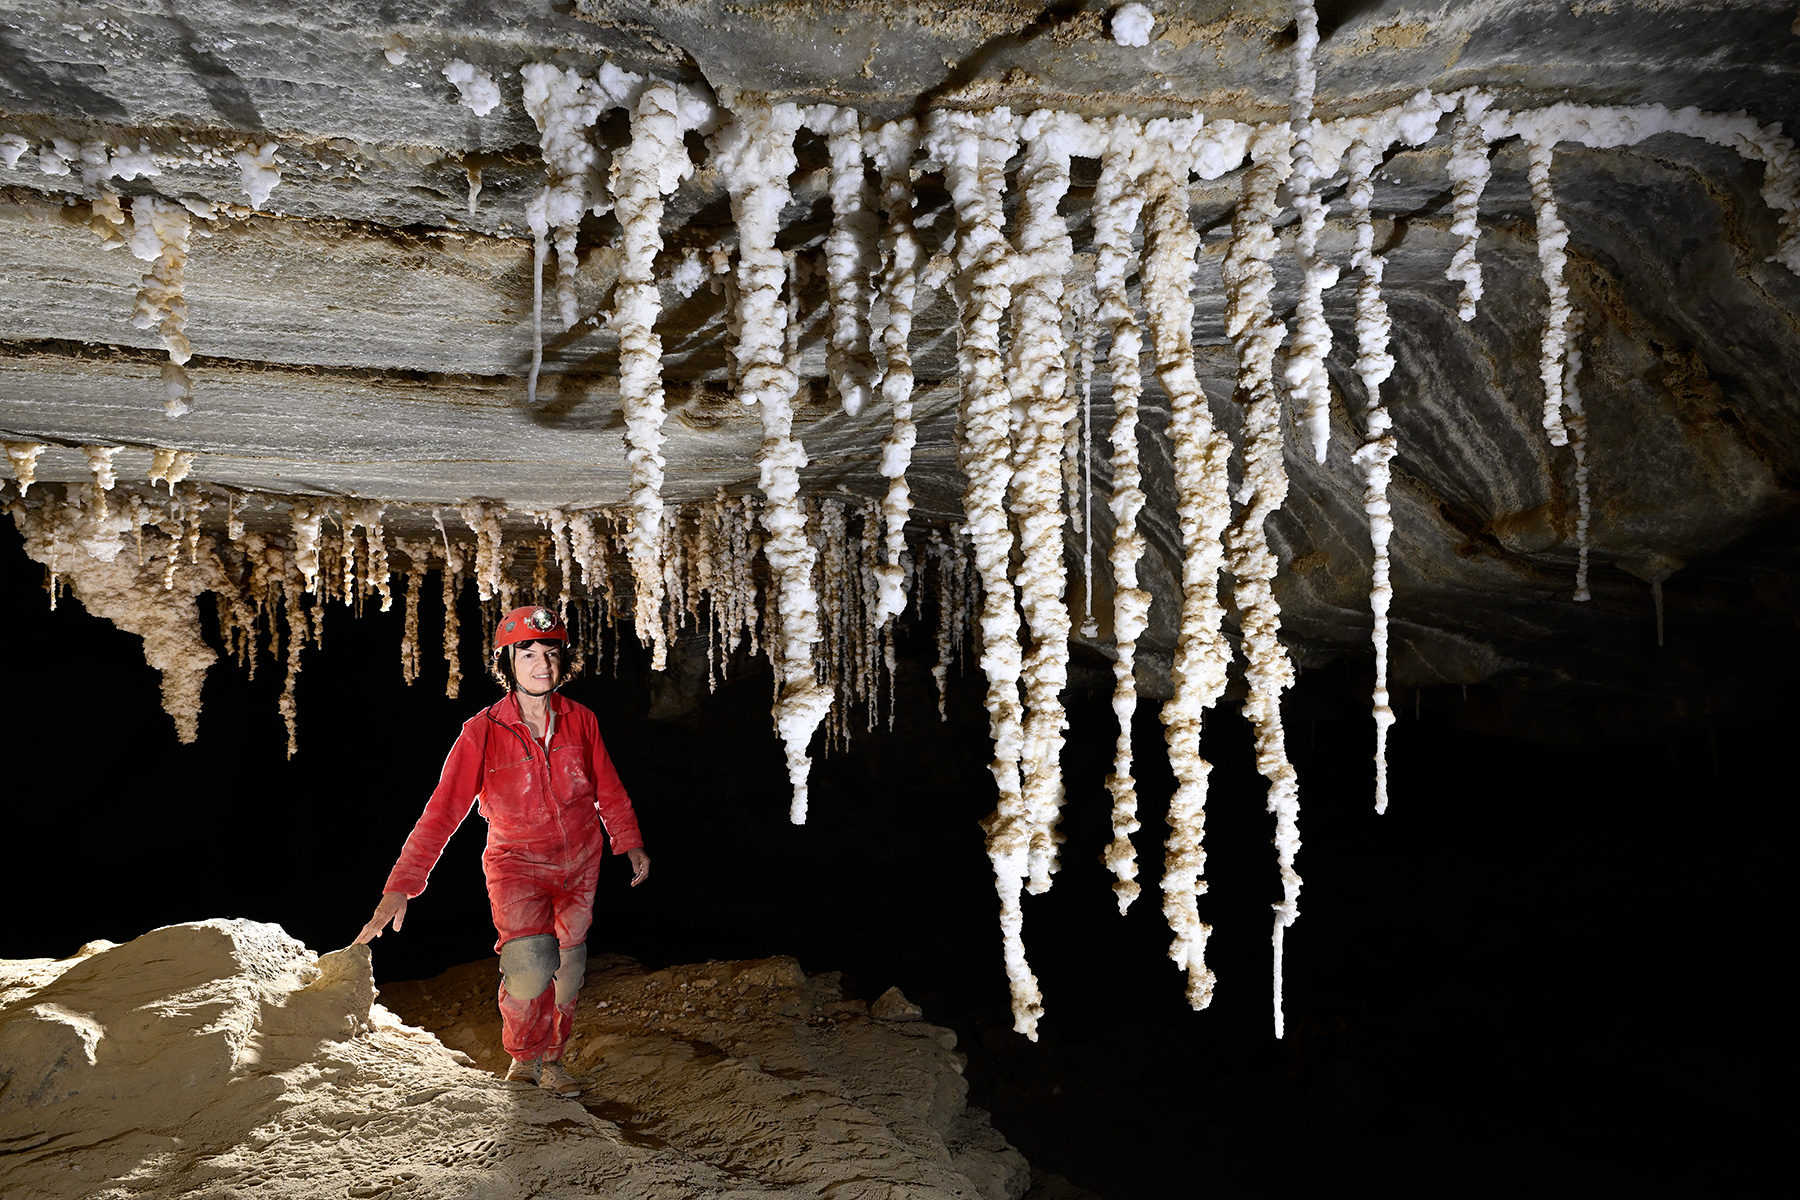 Malham cave (Mont Sodome, Israël) - Ensemble de stalactites de sel 